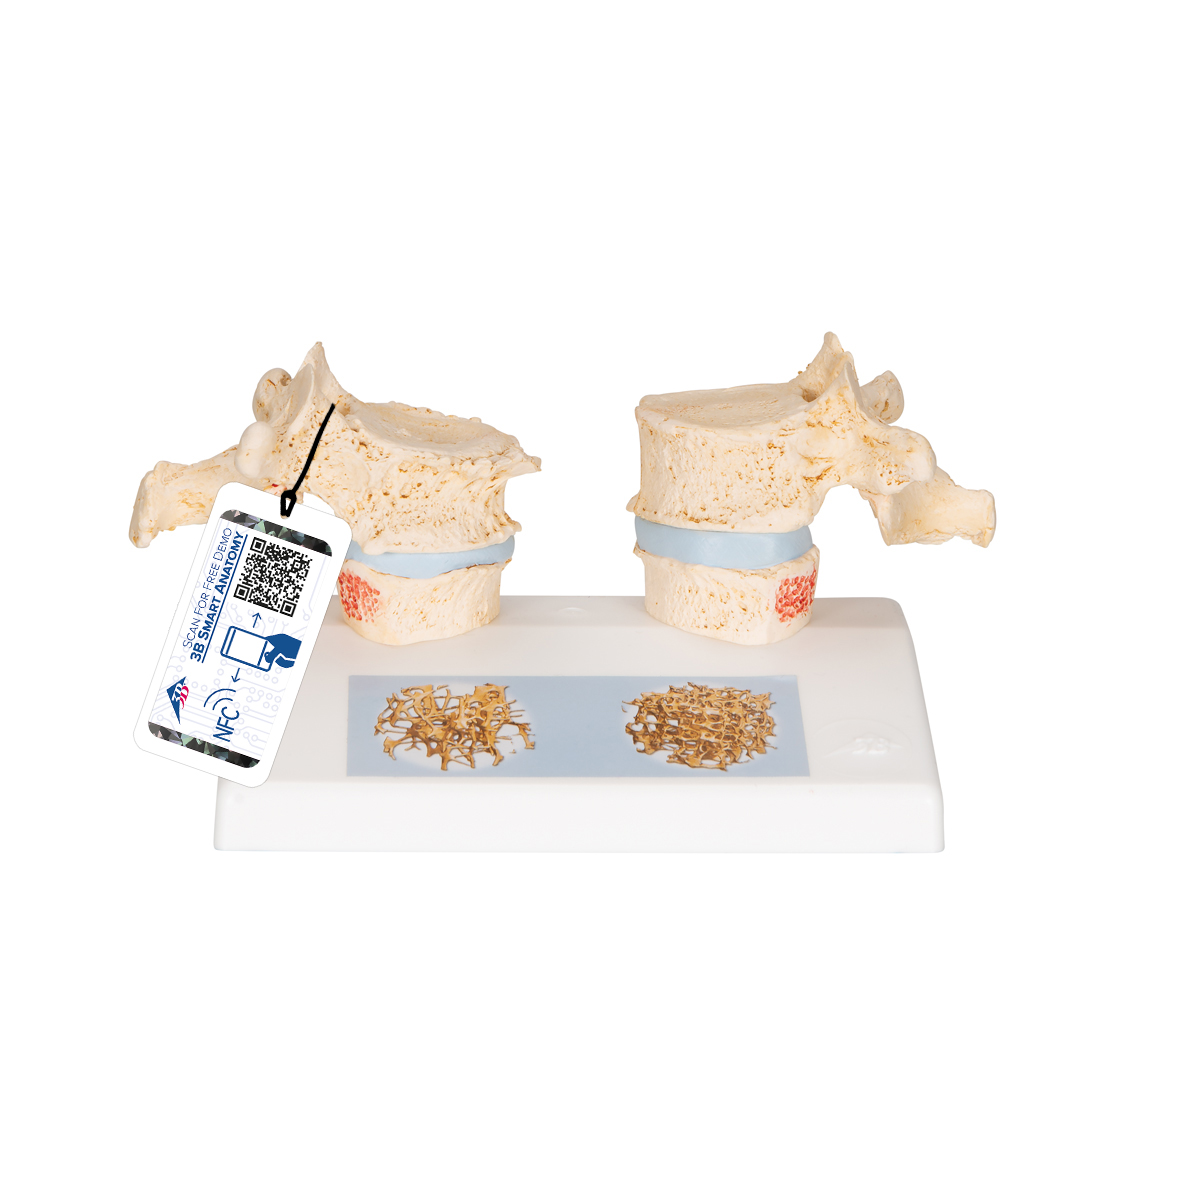 Osteoporose Modell des 11. und 12. Brustwirbels - 3B Smart Anatomy, Bestellnummer 1000182, A95, 3B Scientific